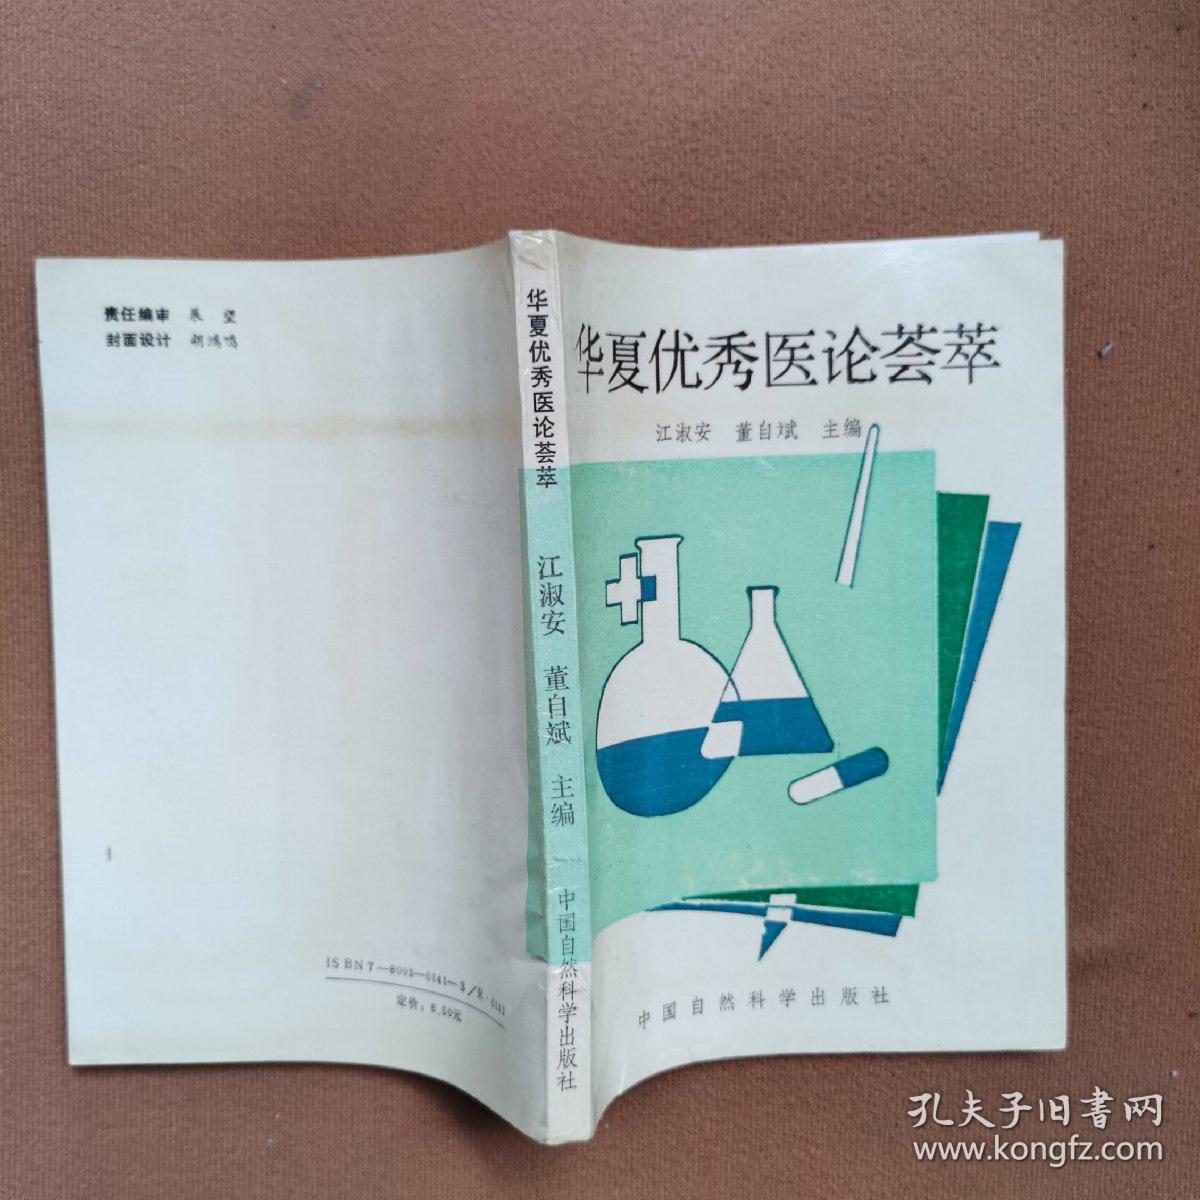 华夏优秀医论荟萃(一)中医书